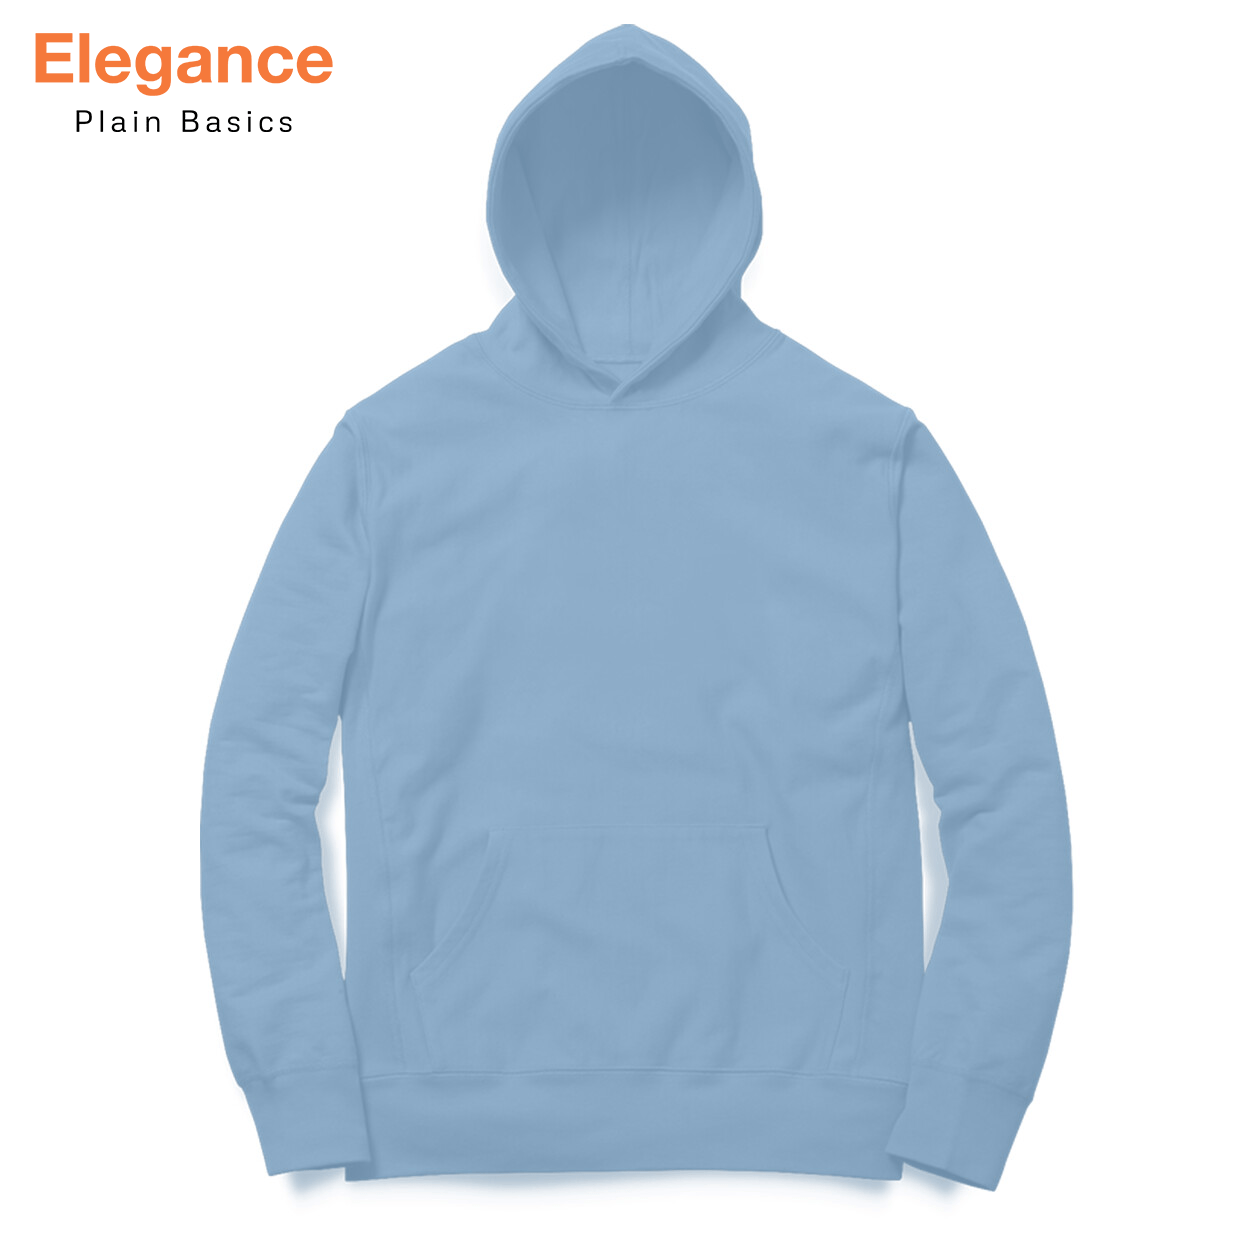 Baby Blue Hoodie - Elegance Plain Basics - The Sanatan Store